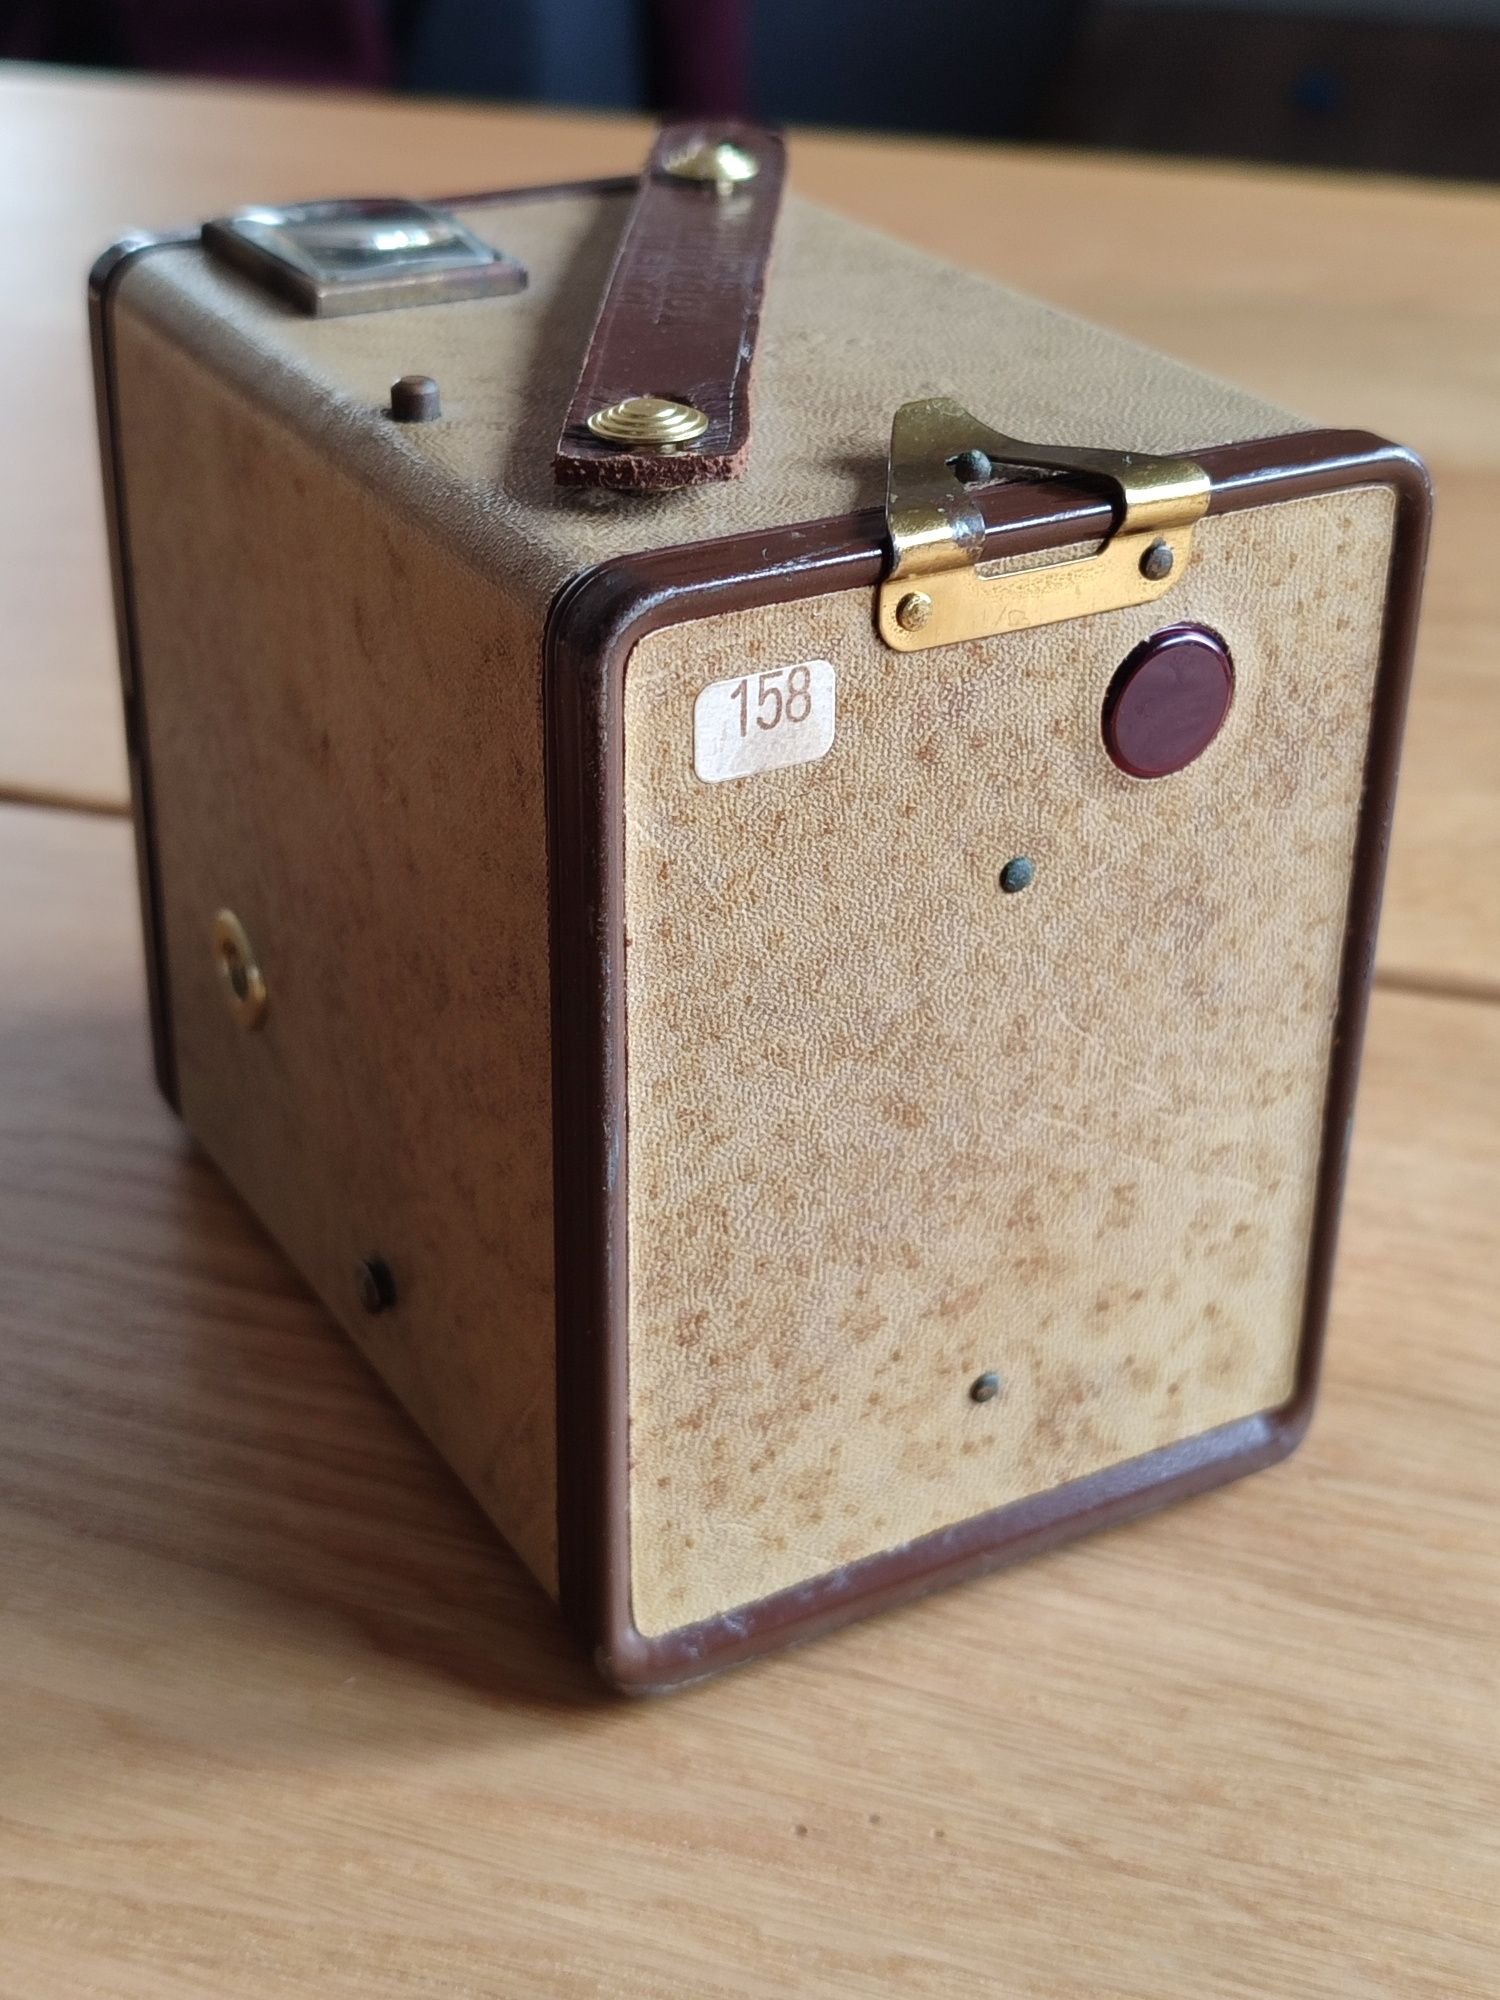 Vintage aparat fotograficzny Kodak Brownie Six-20